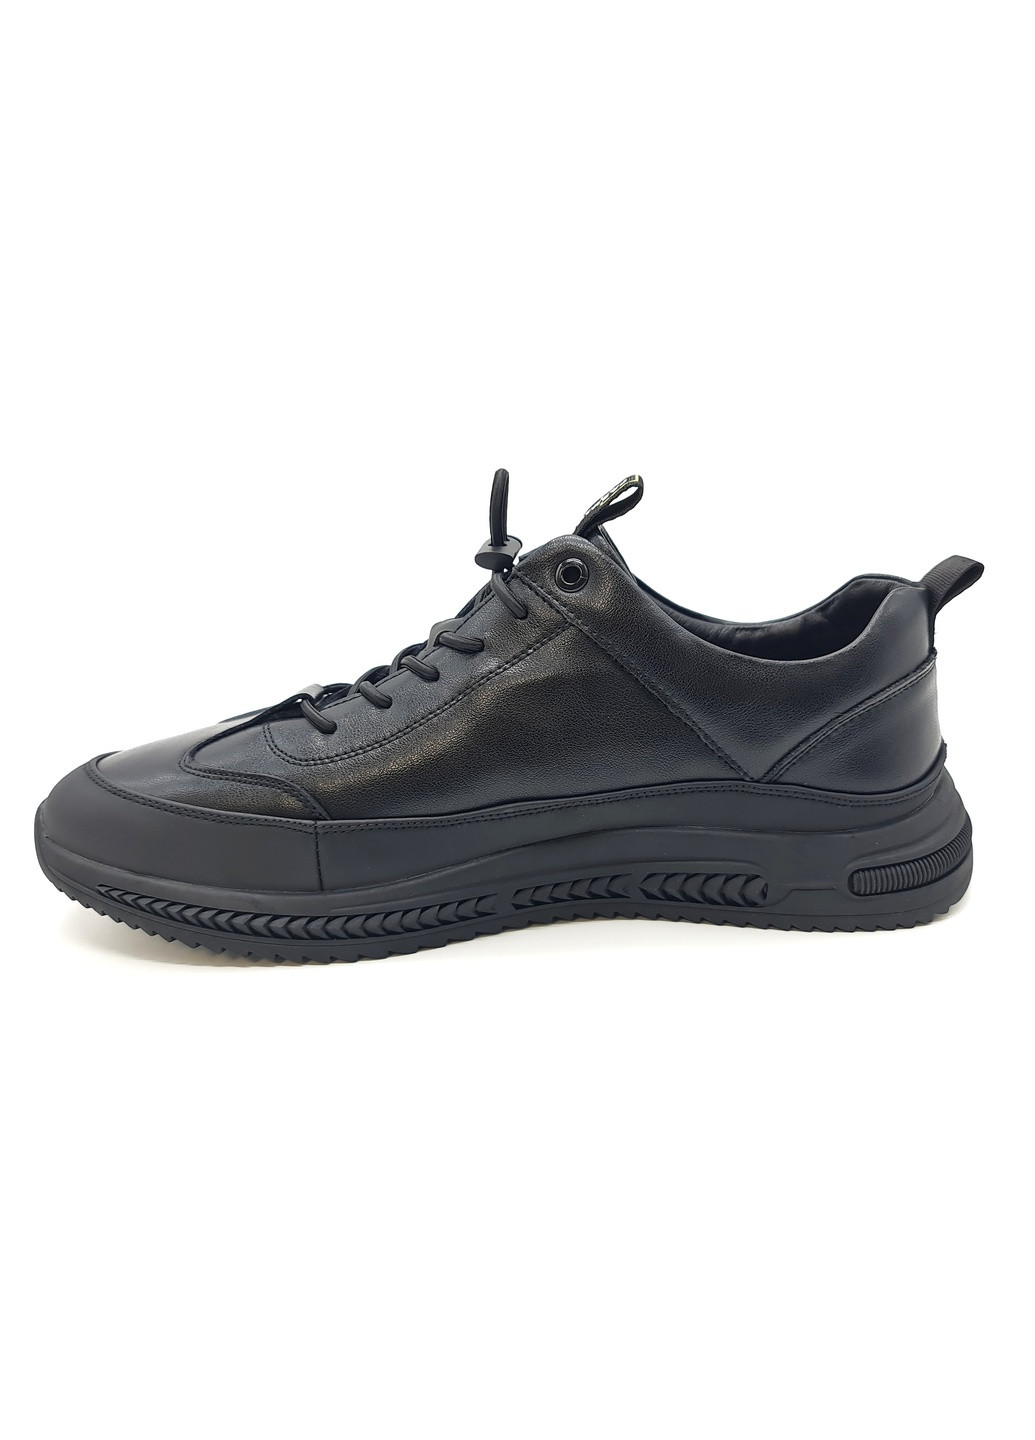 Чоловічі туфлі чорні шкіряні YA-11-6 27 см (р) Yalasou (259326294)